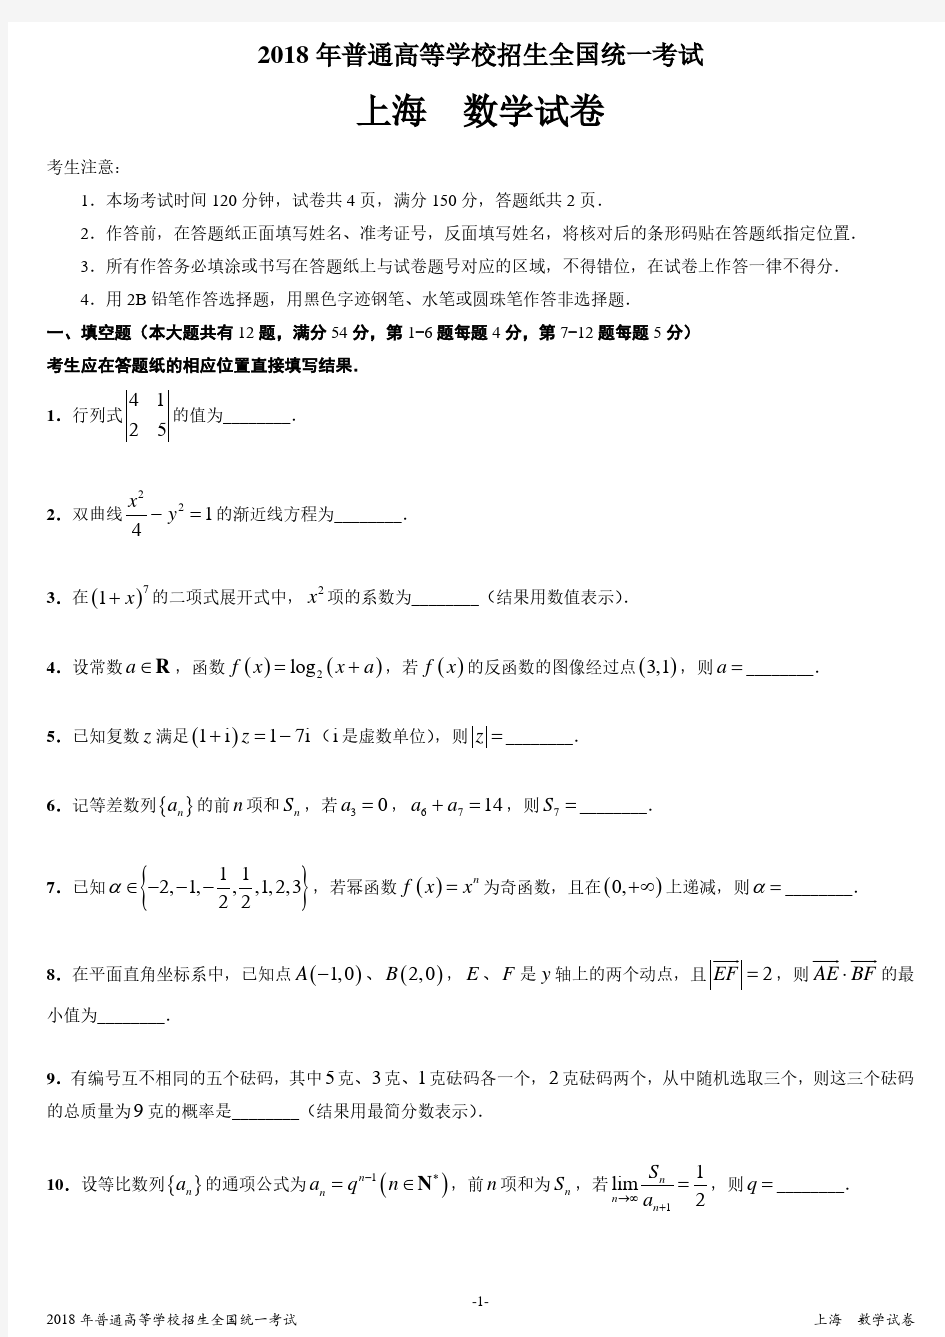 2018年上海市高考数学真题卷-发布